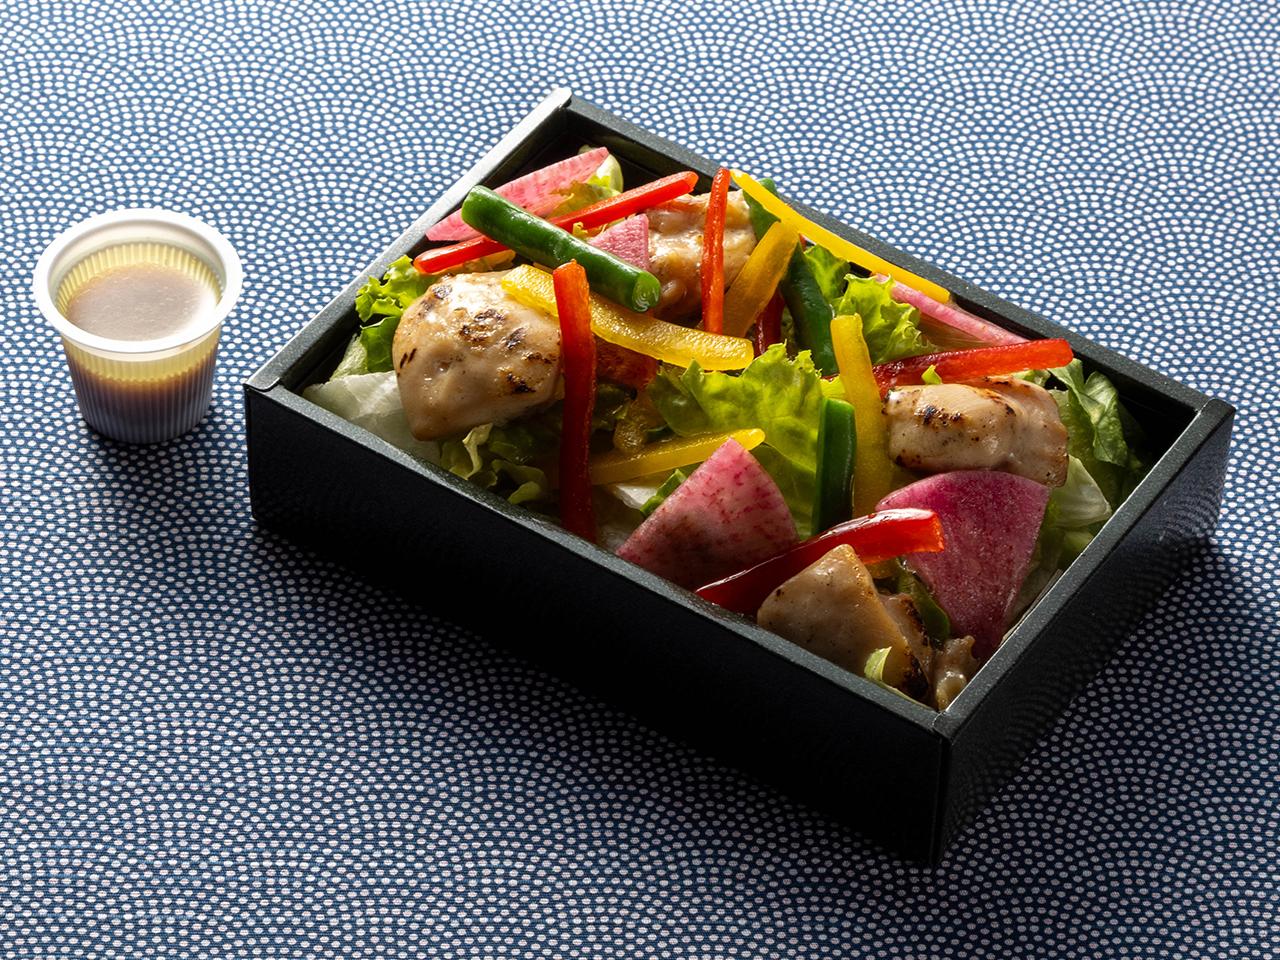 "นี่คือรูปภาพอาหารบนเครื่อง สลัดเนื้อไก่กับแรดิชแตงโมพร้อมสารพัดผัก ~น้ำสลัดบัลซามิก~"